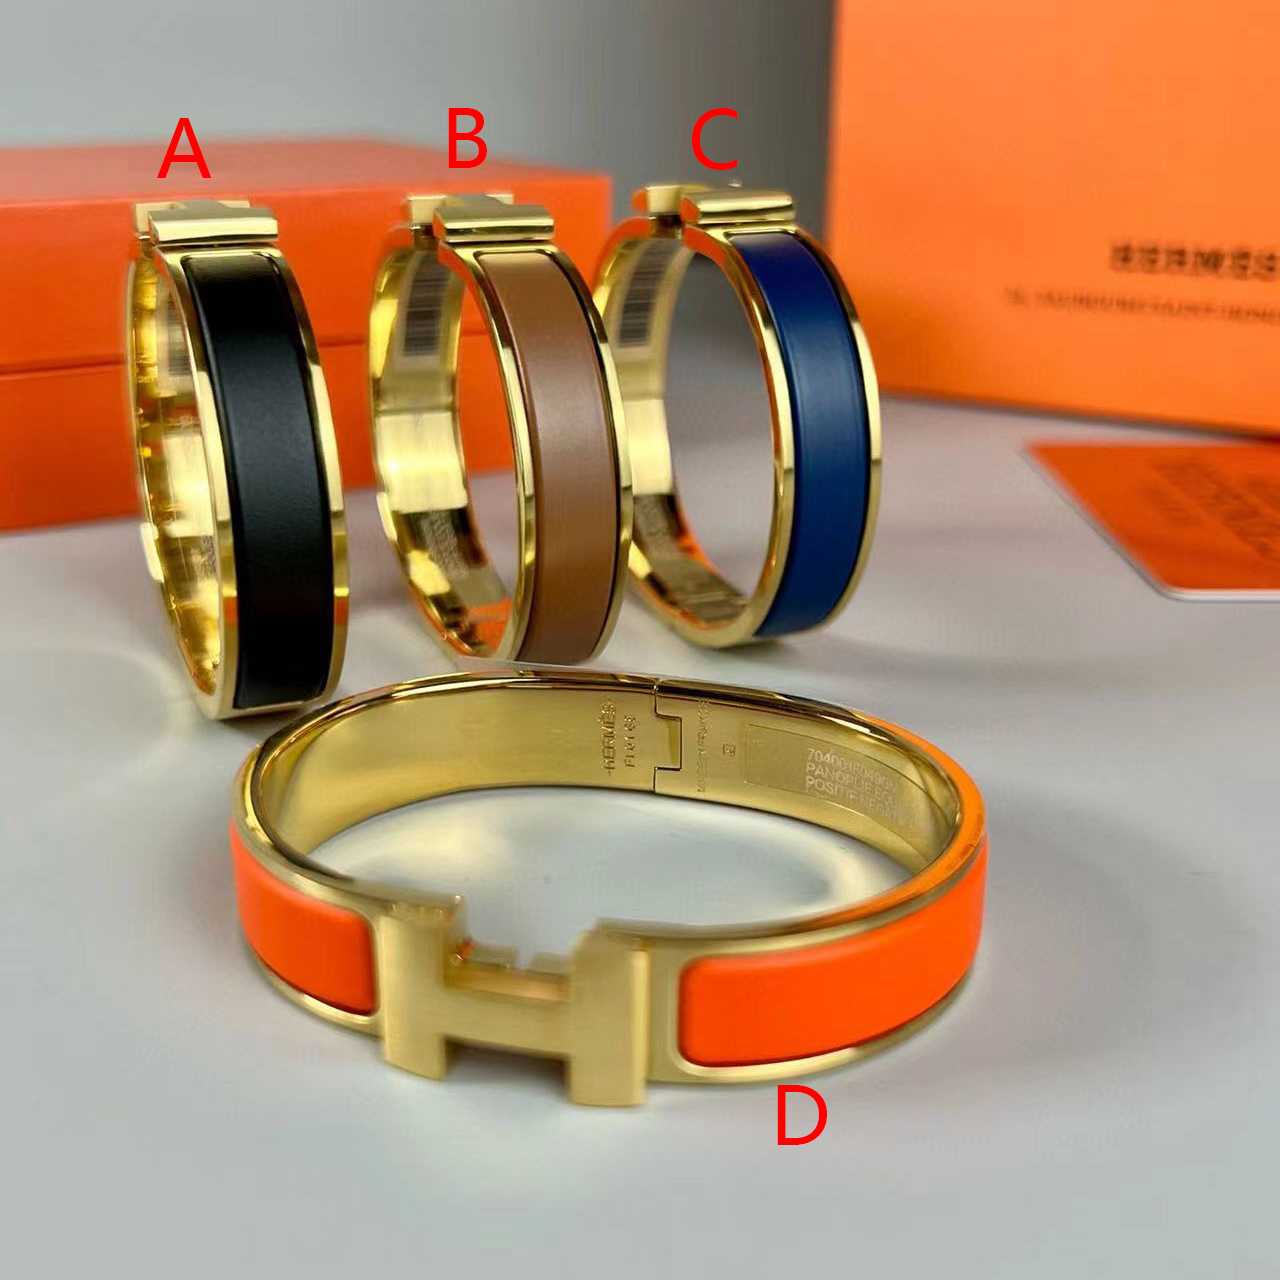 Hermes Bracelets - everydesigner